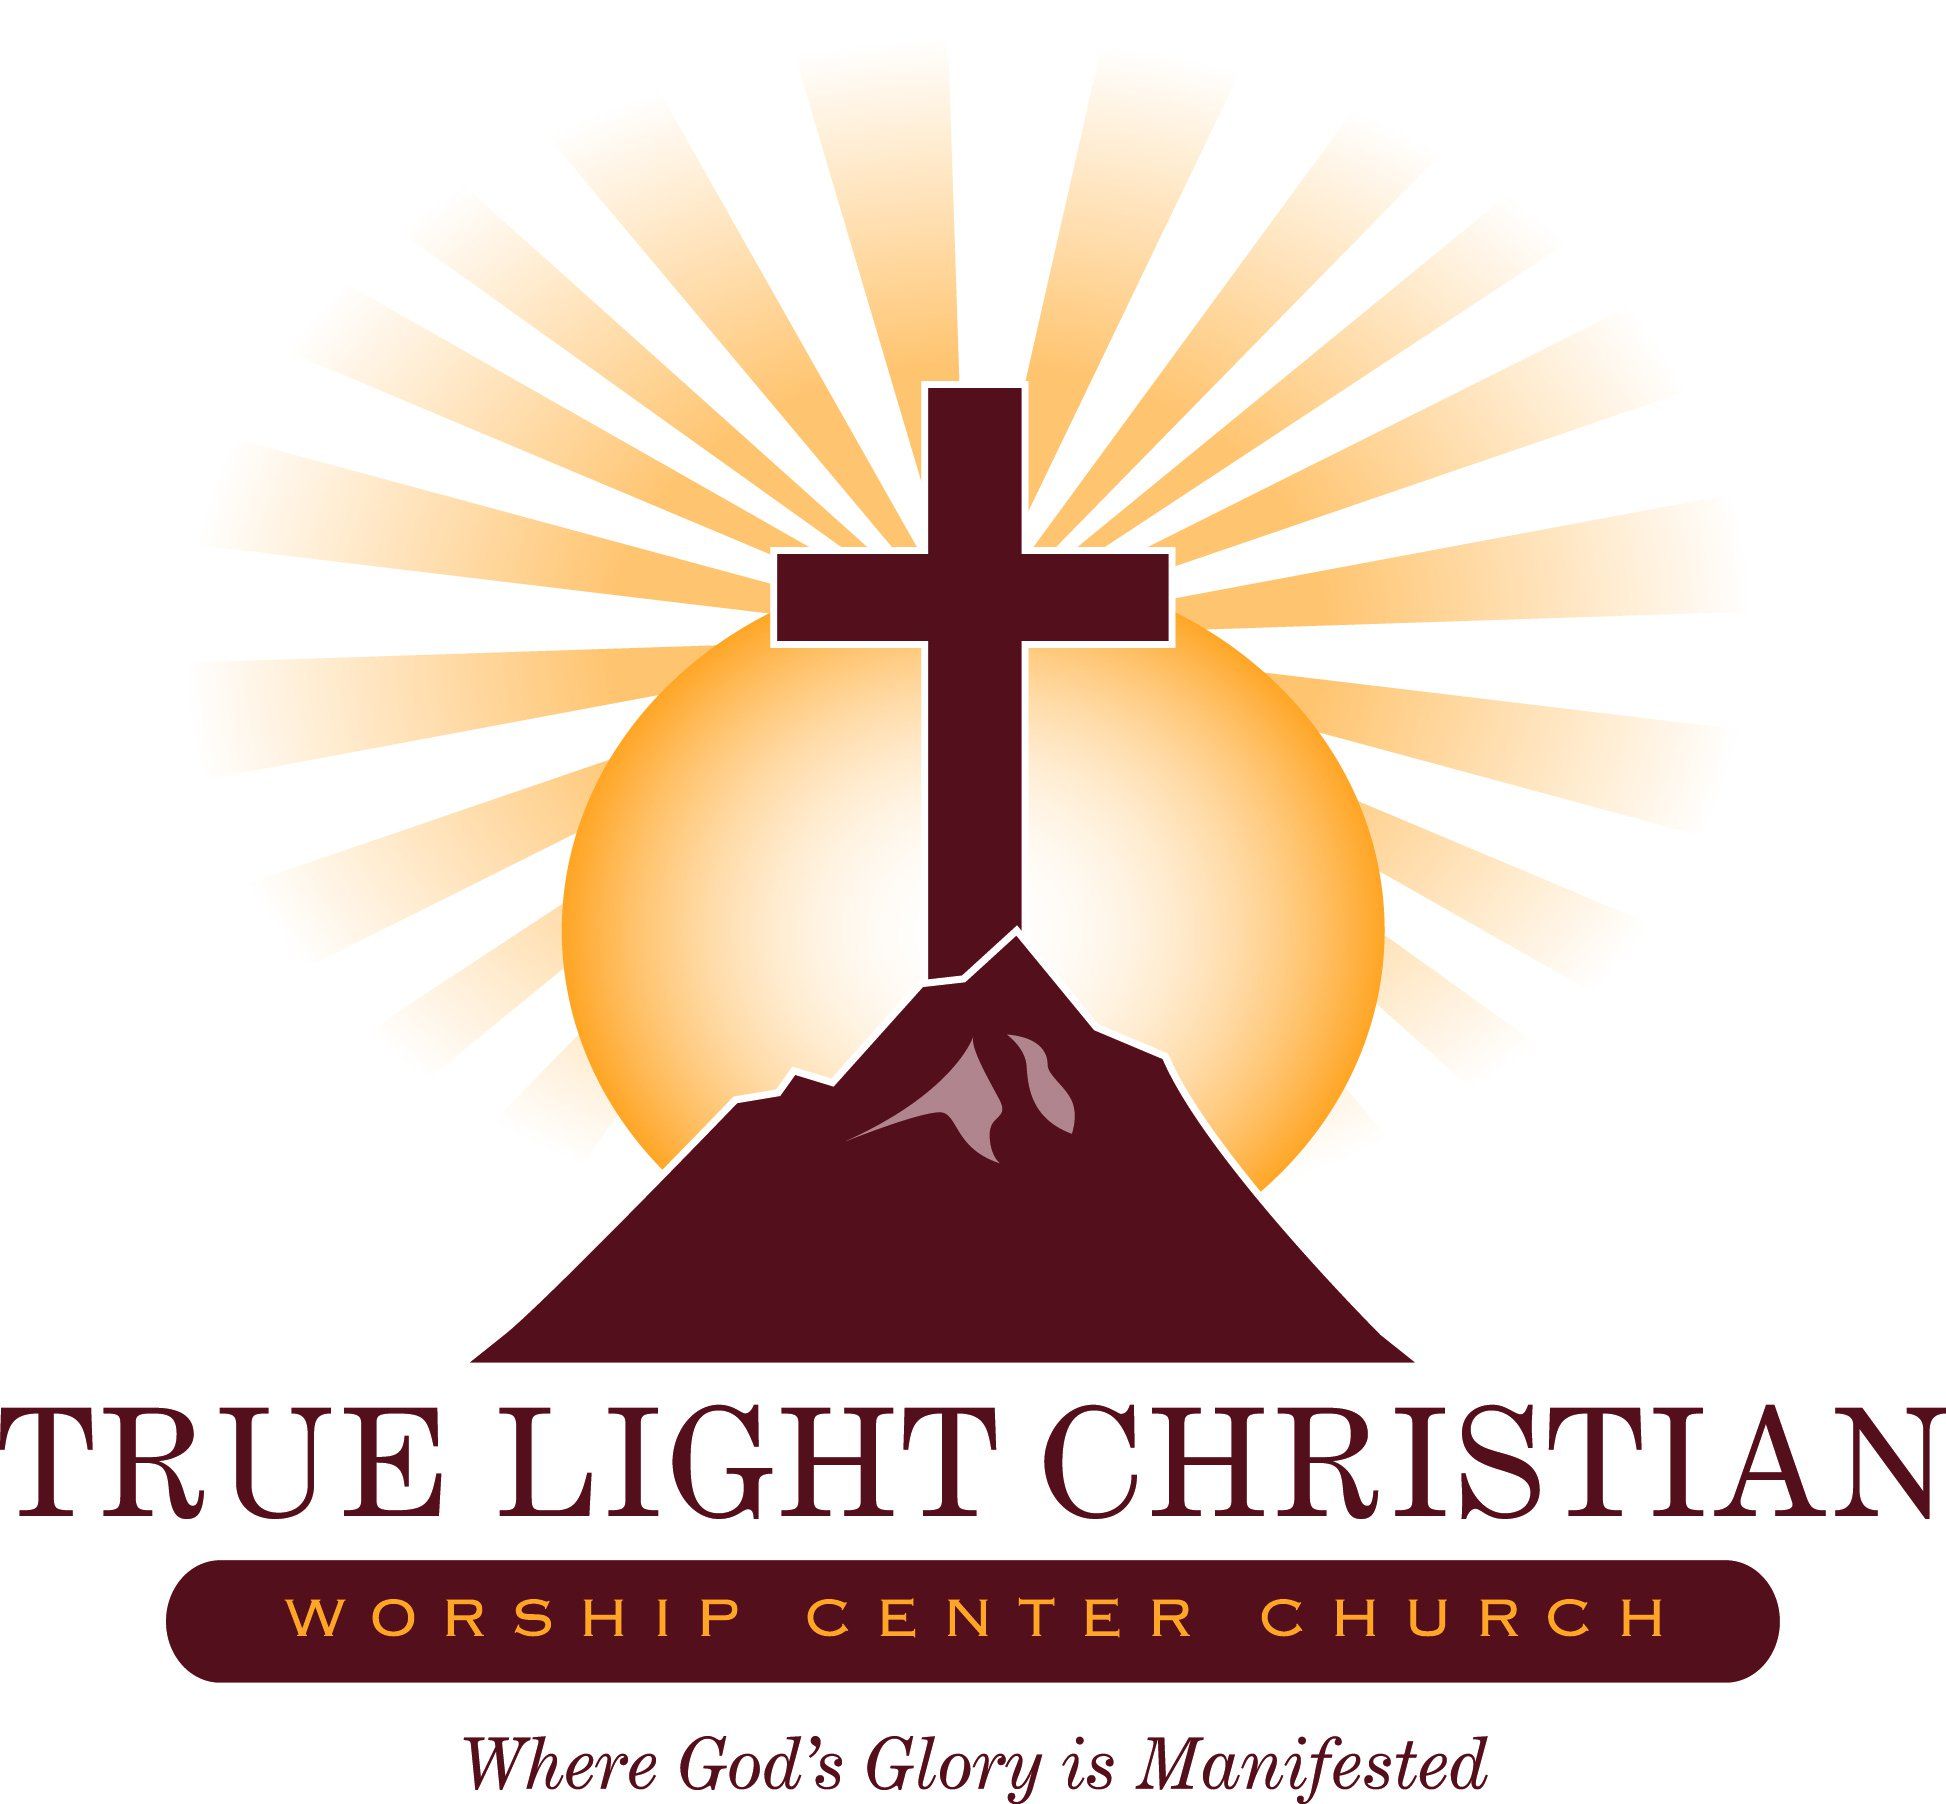 True Light Christian Worship Center Church